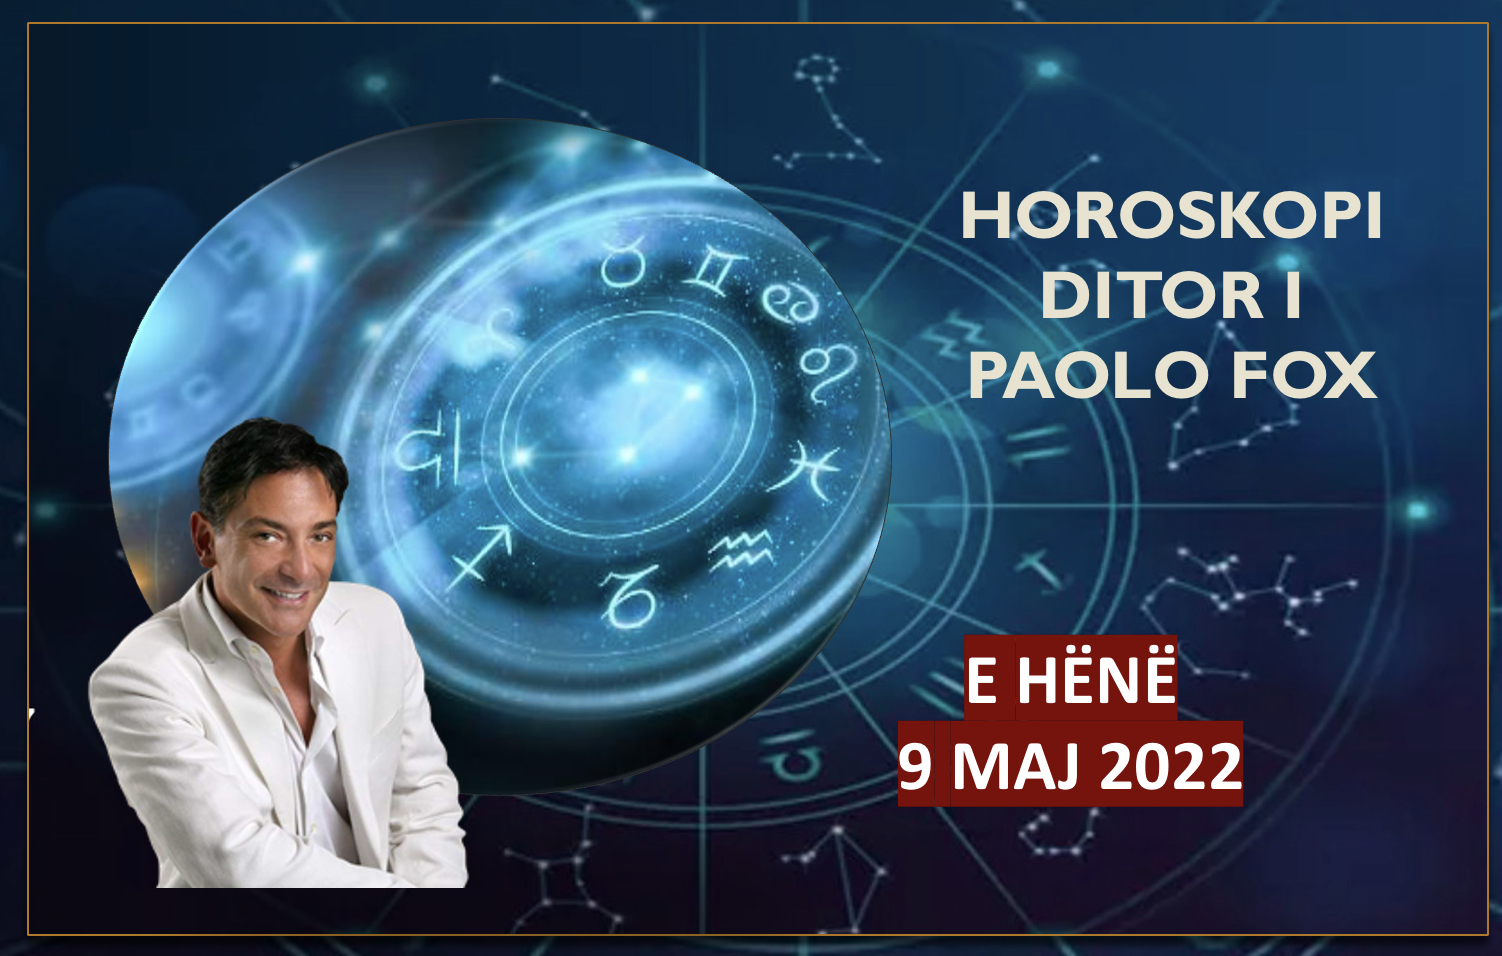 Horoskopi i Paolo Fox për ditën e hënë, 9 maj 2022